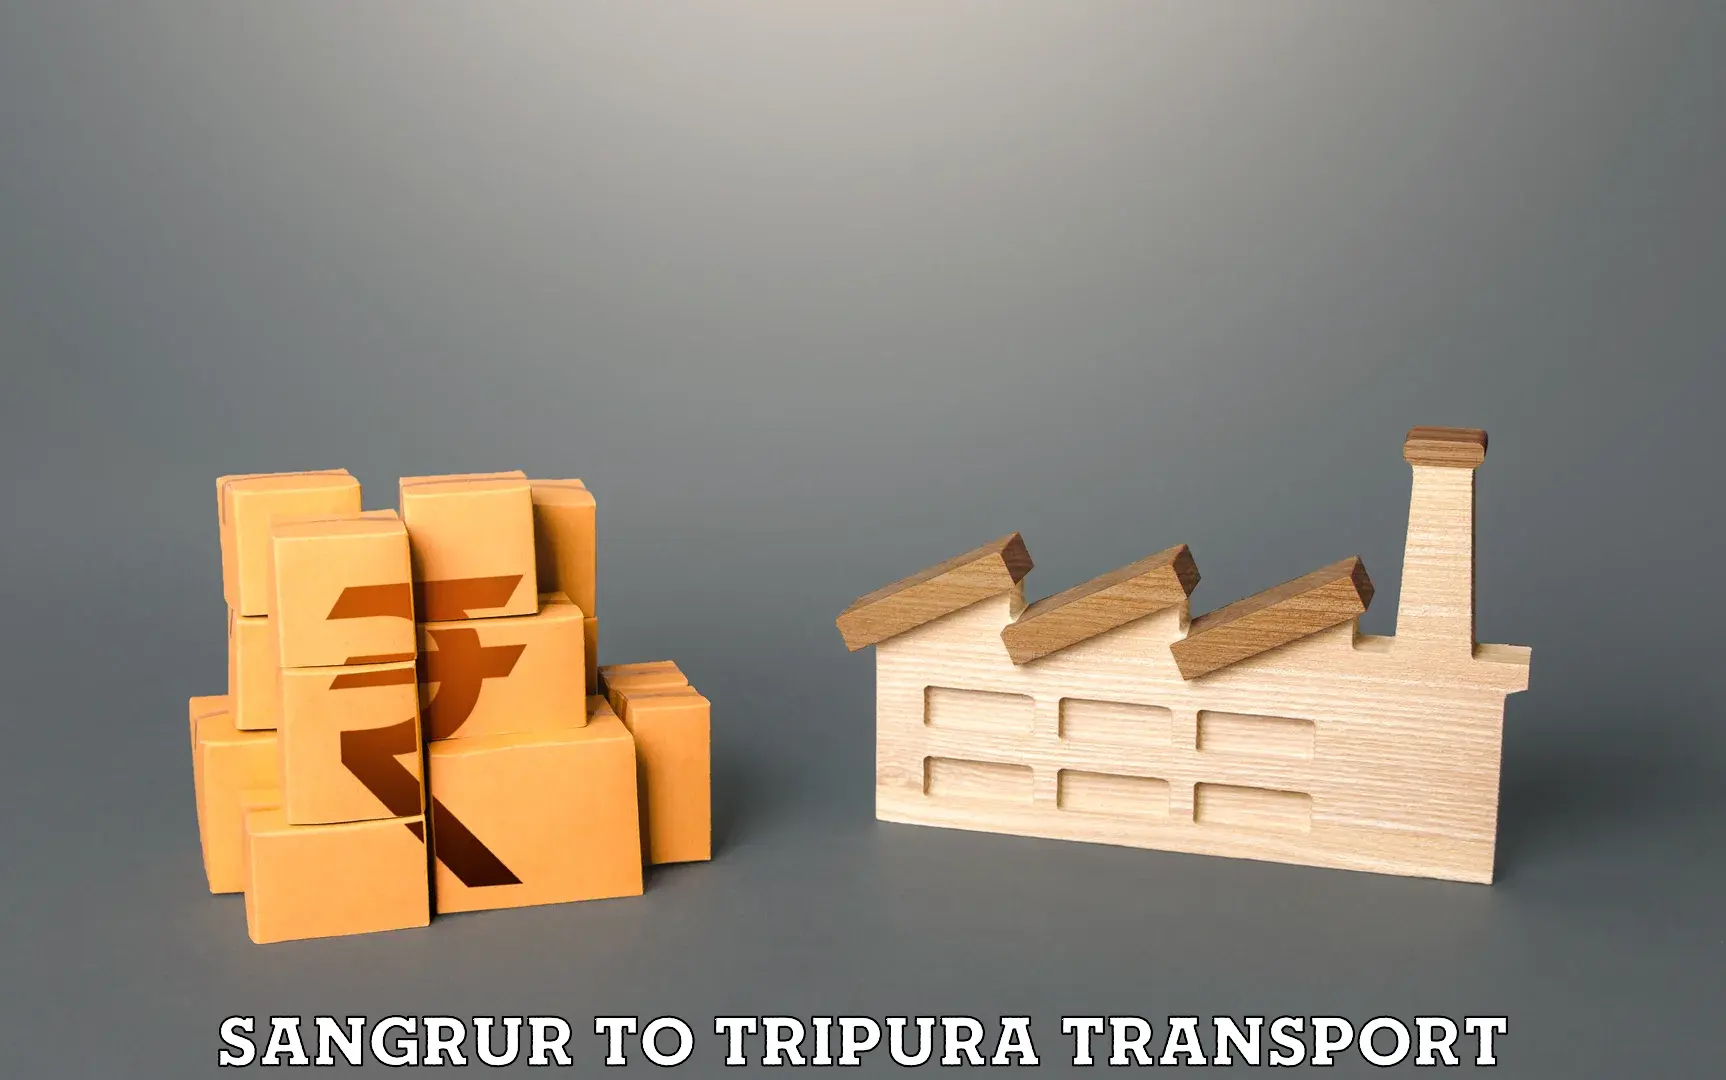 Container transport service Sangrur to Amarpur Gomati